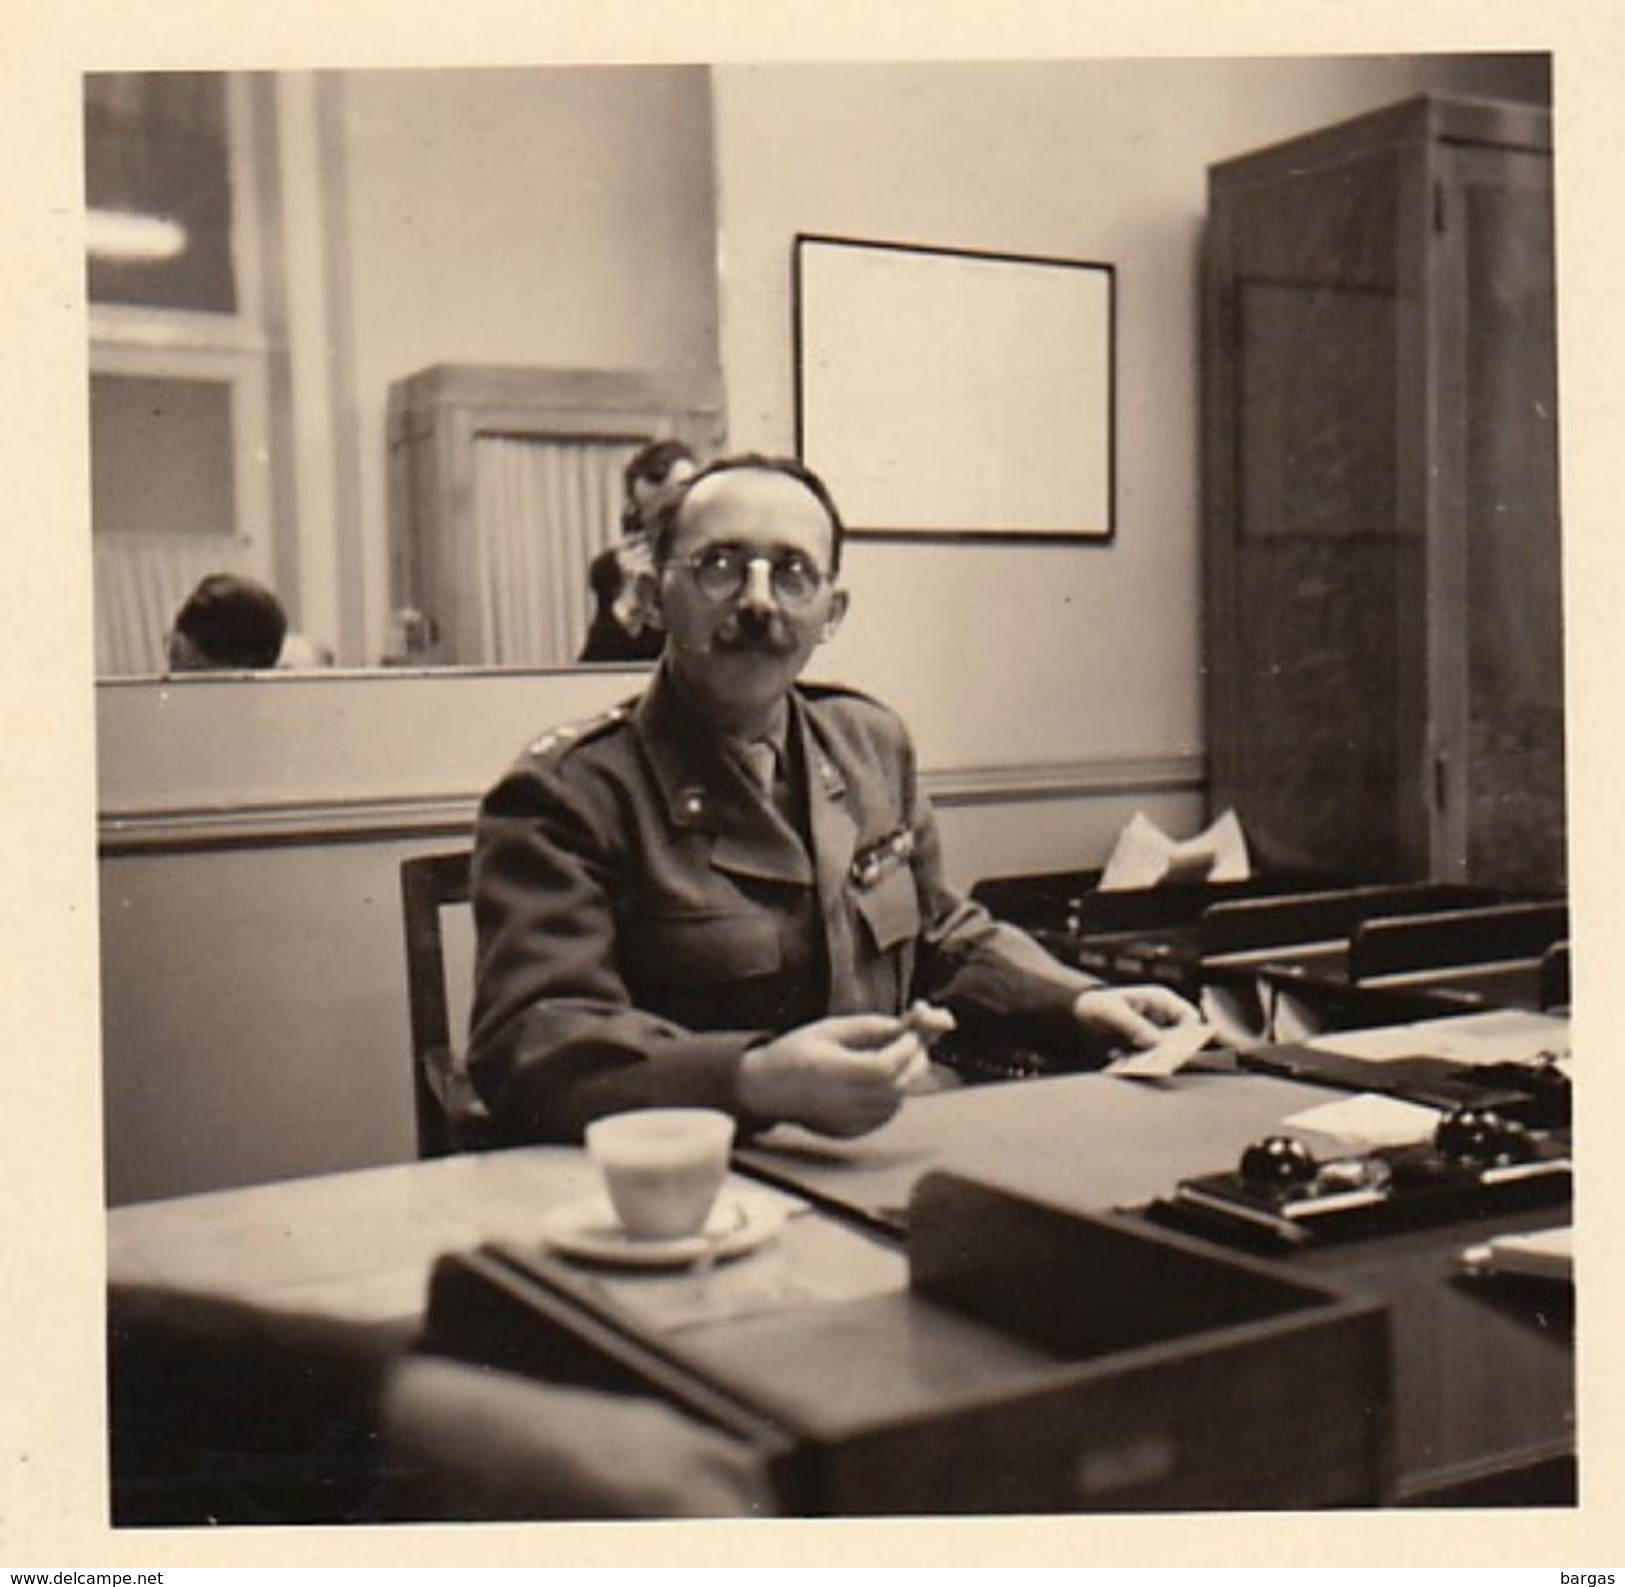 9 photos militaire officier CARON de Gand sécrétariat du S.A.T. armée belge nomination en 1947